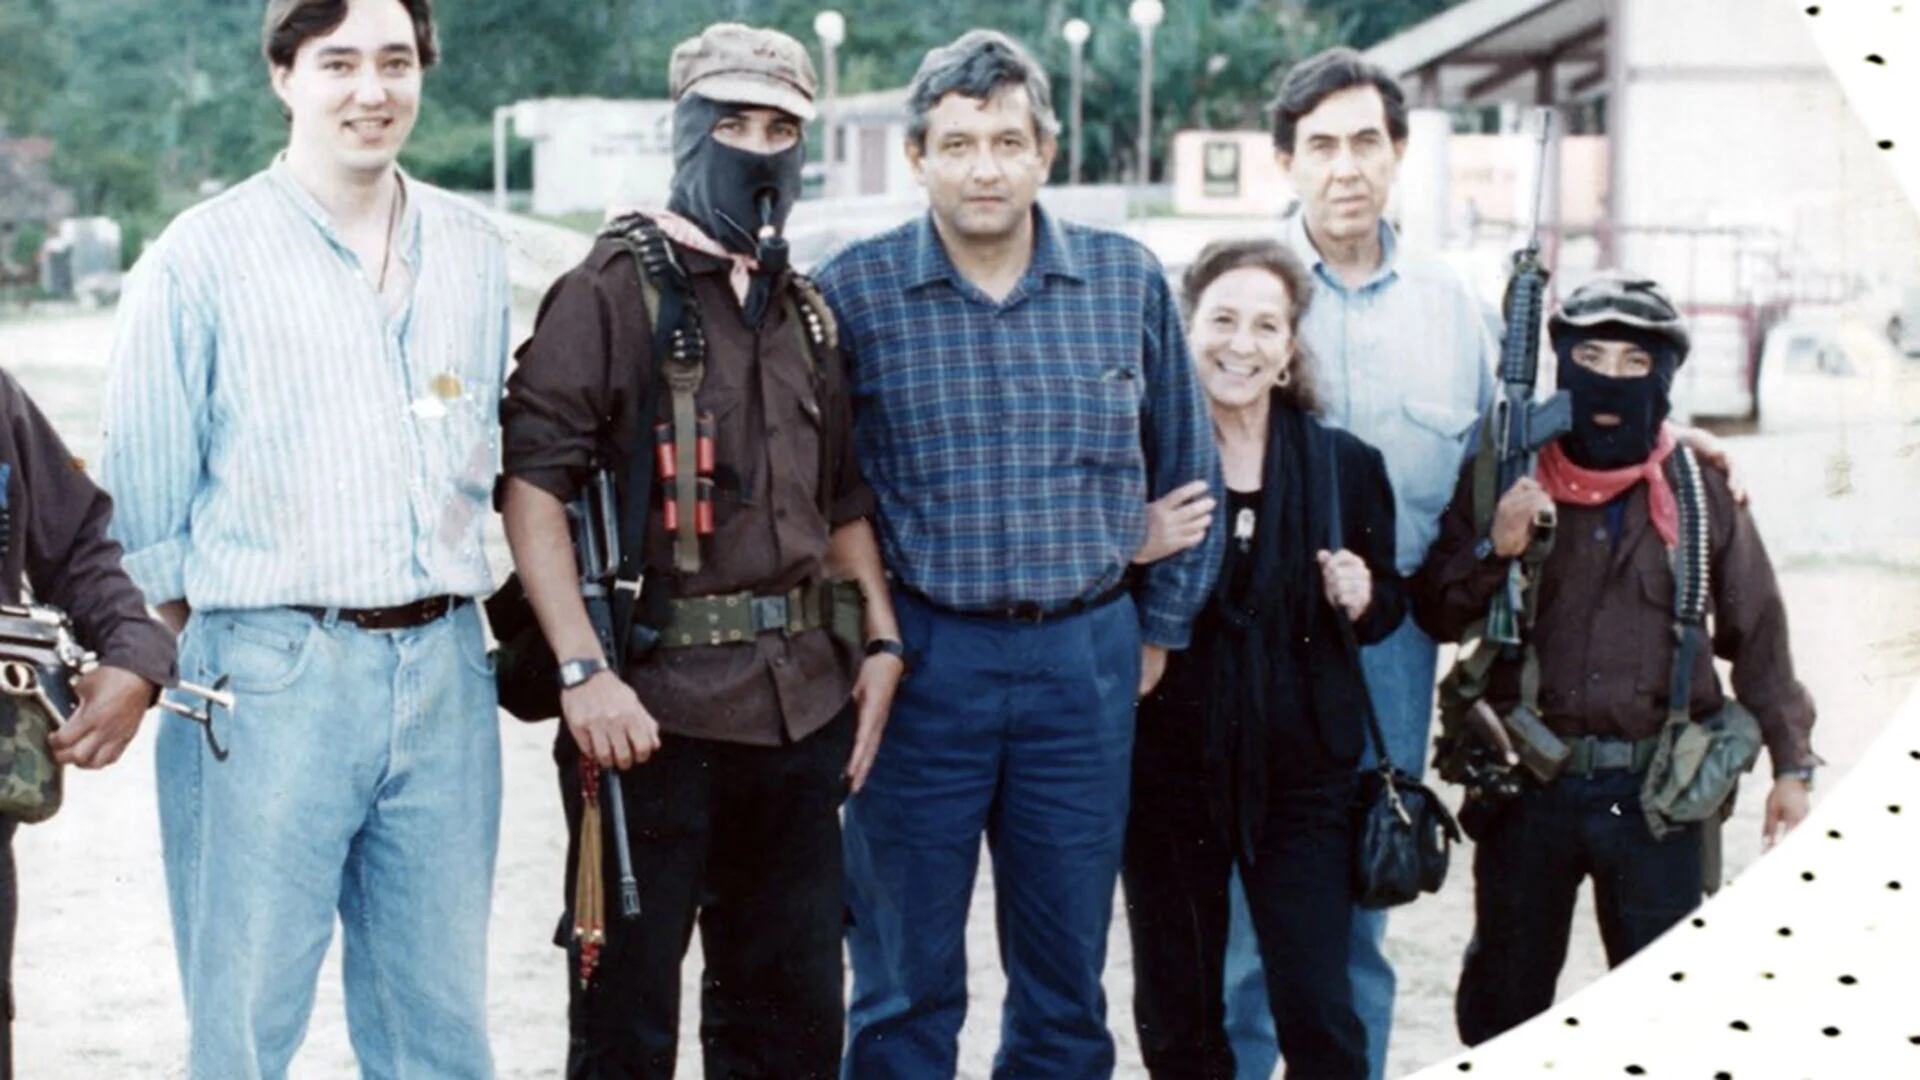 Esta fotografía fue tomada en 1994 en Chiapas, y en ella aparecen Cuauhtémoc Cárdenas hijo, el subcomandante Marcos, Andrés Manuel López Obrador, la activista Rosario Robles, Cuauhtémoc Cárdenas y el comandante Tacho.